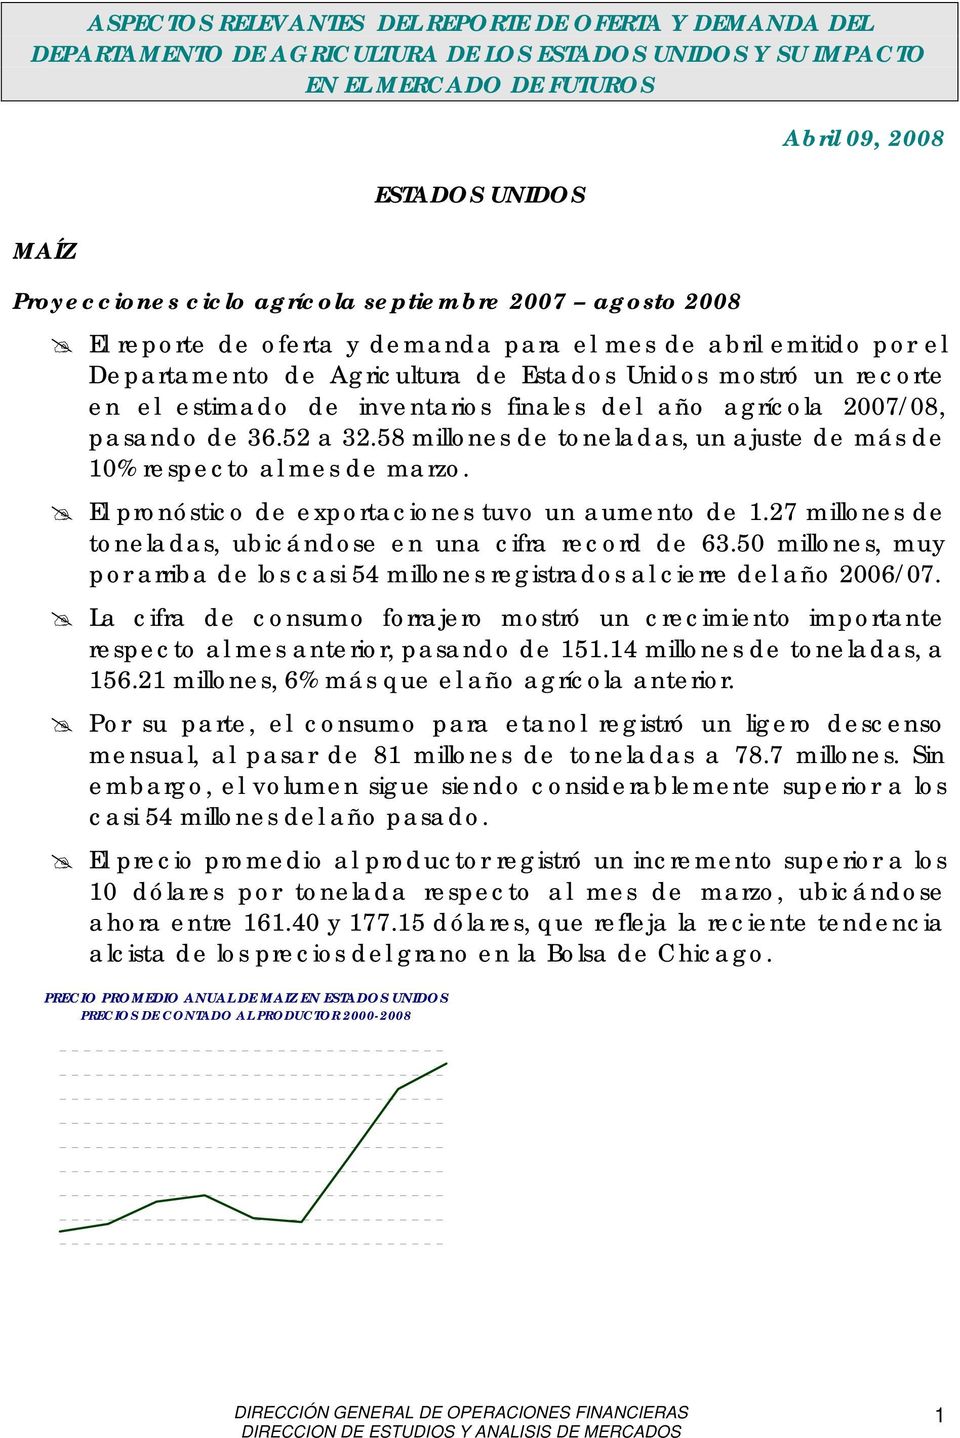 finales del año agrícola 2007/08, pasando de 36.52 a 32.58 millones de toneladas, un ajuste de más de 10% respecto al mes de marzo. El pronóstico de exportaciones tuvo un aumento de 1.